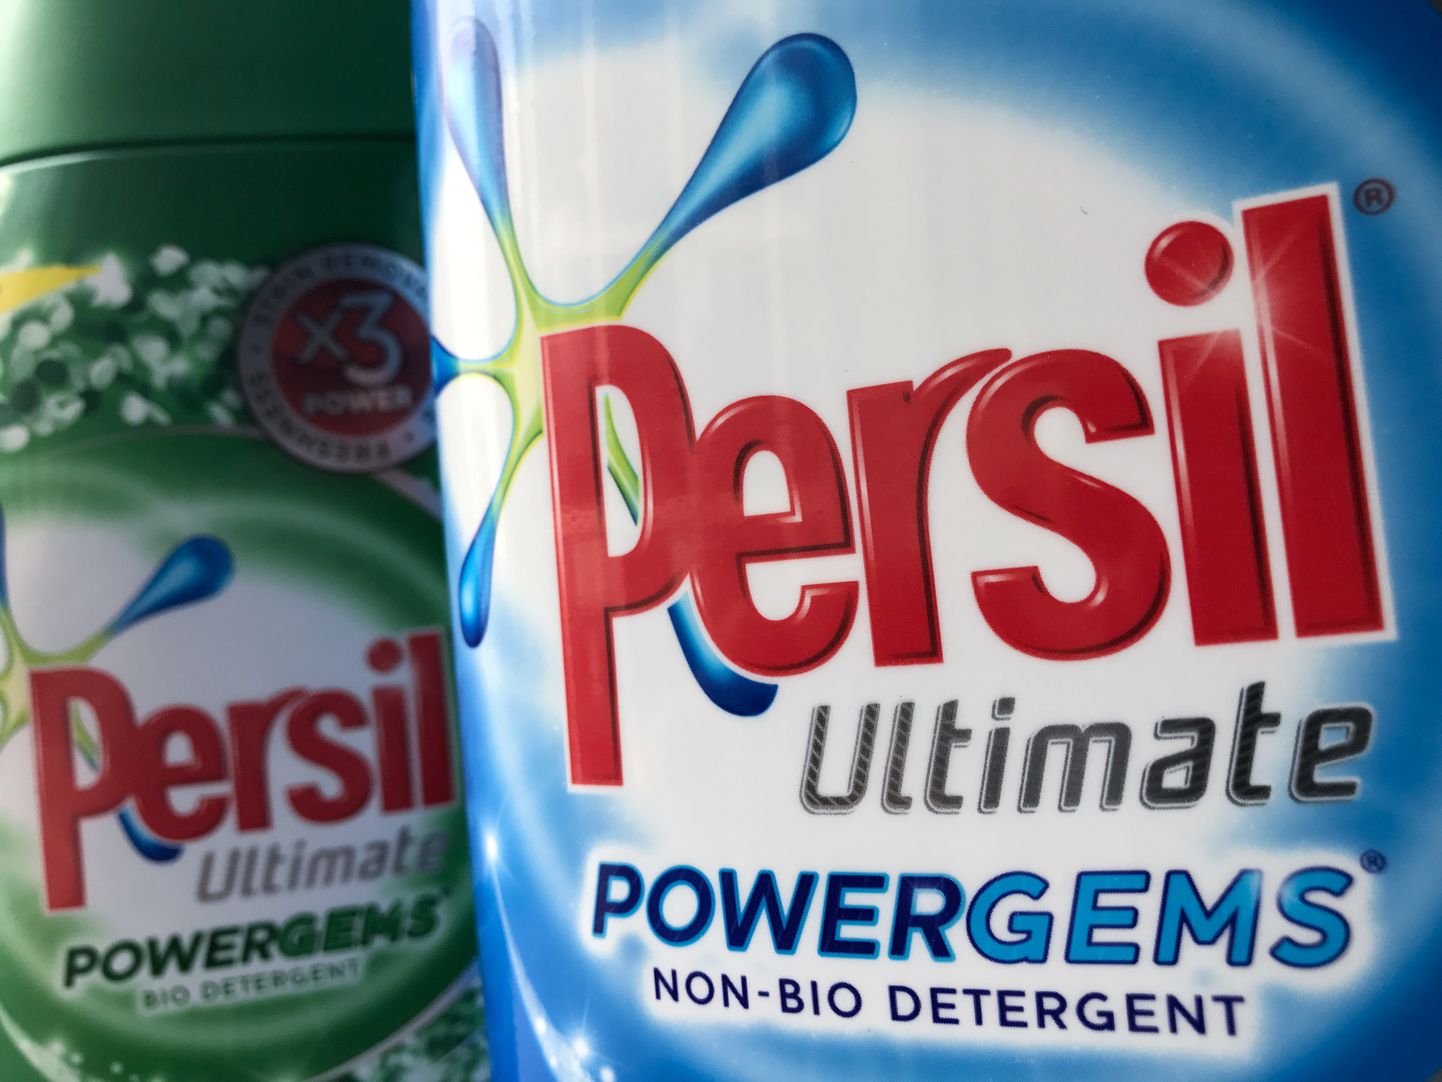 Pesuhooldus vahendi Persil tootja Unilever lubas 2030. aastaks oma toodetest fosiilkütused kõrvaldada.